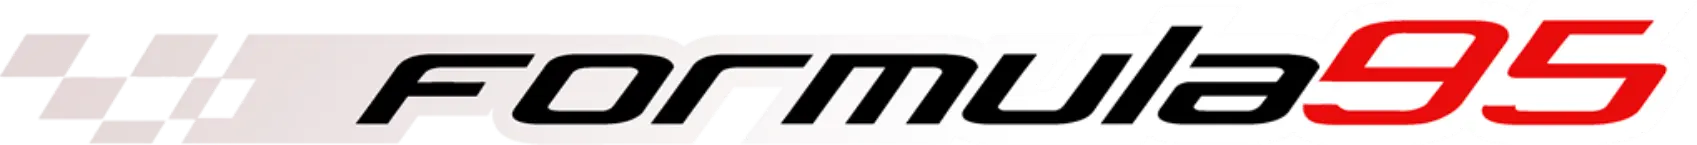 Formula95.com logo - Início